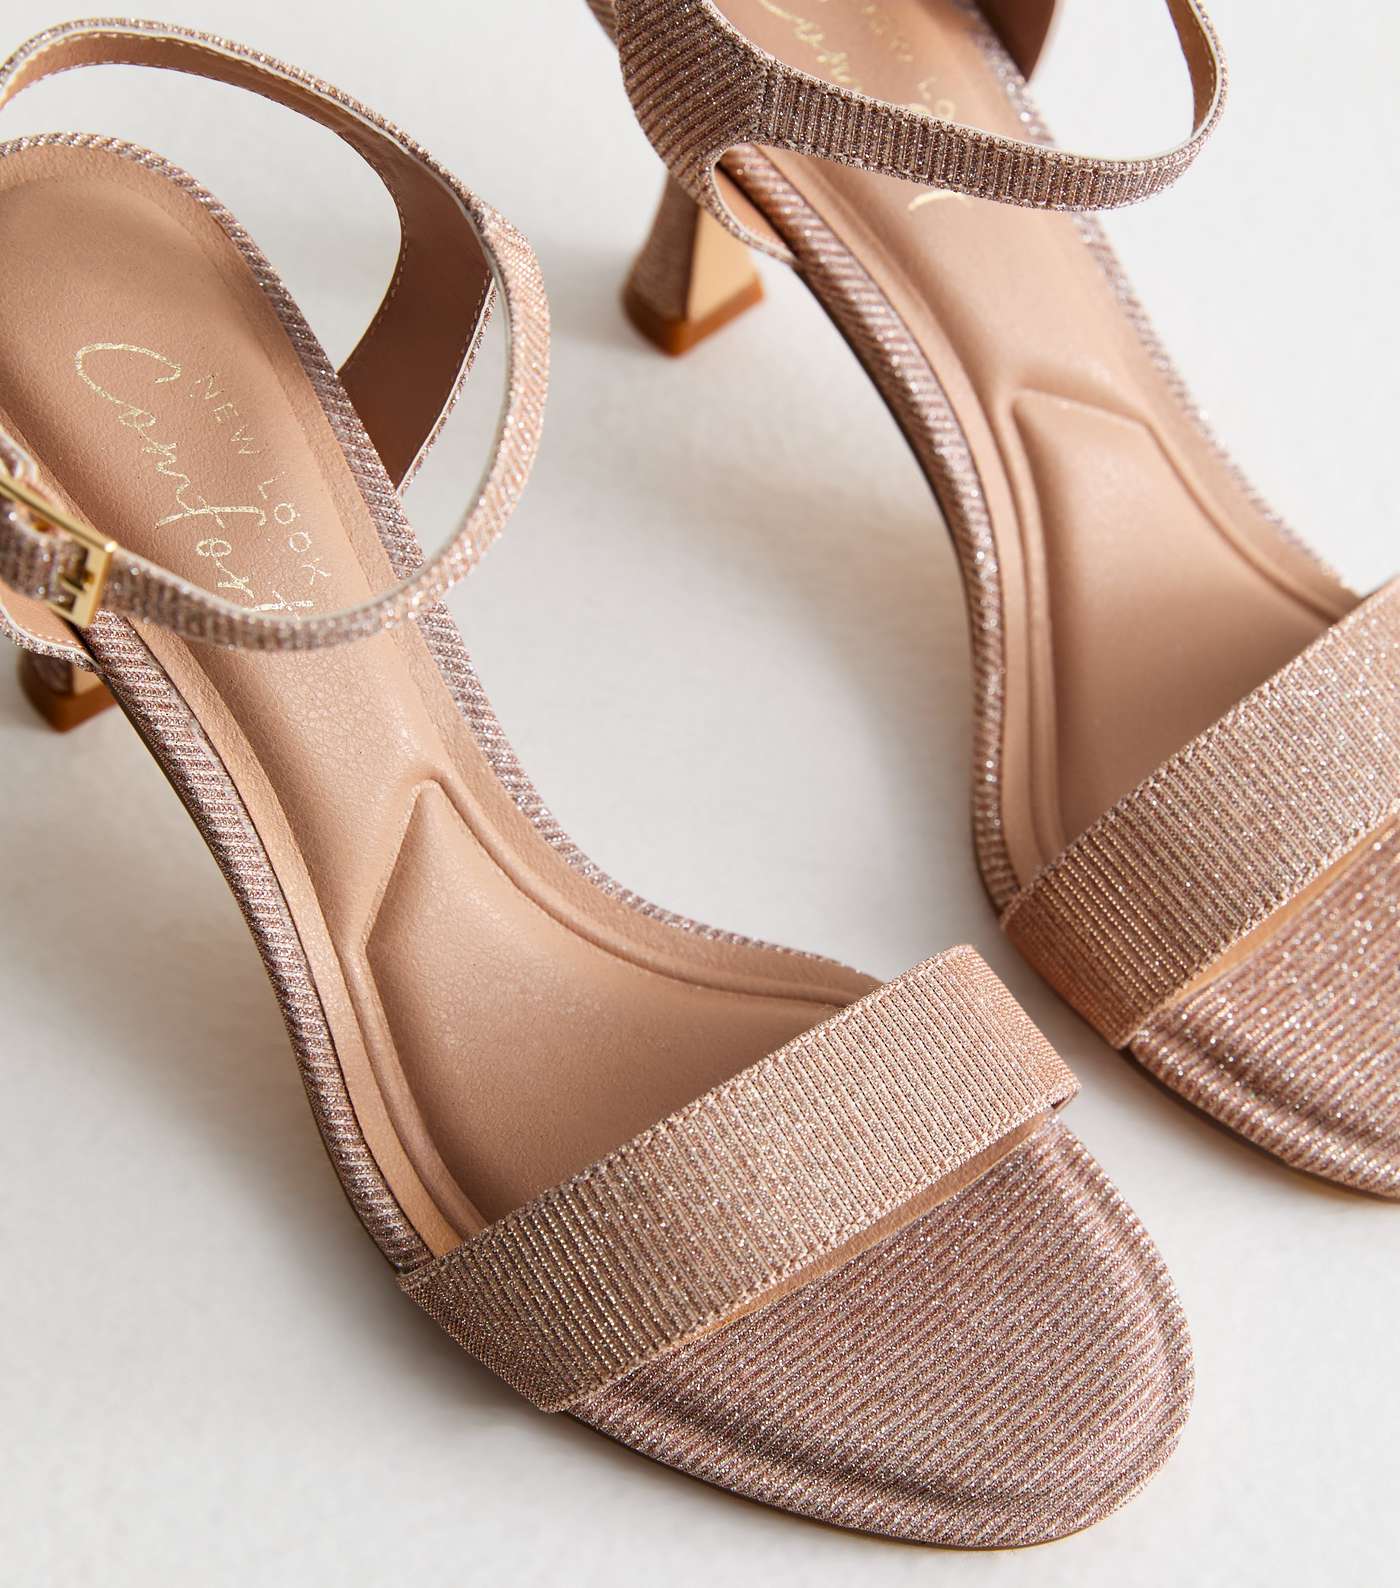 Rose Gold Shimmer 2 Part Stiletto Heel Sandals Image 3